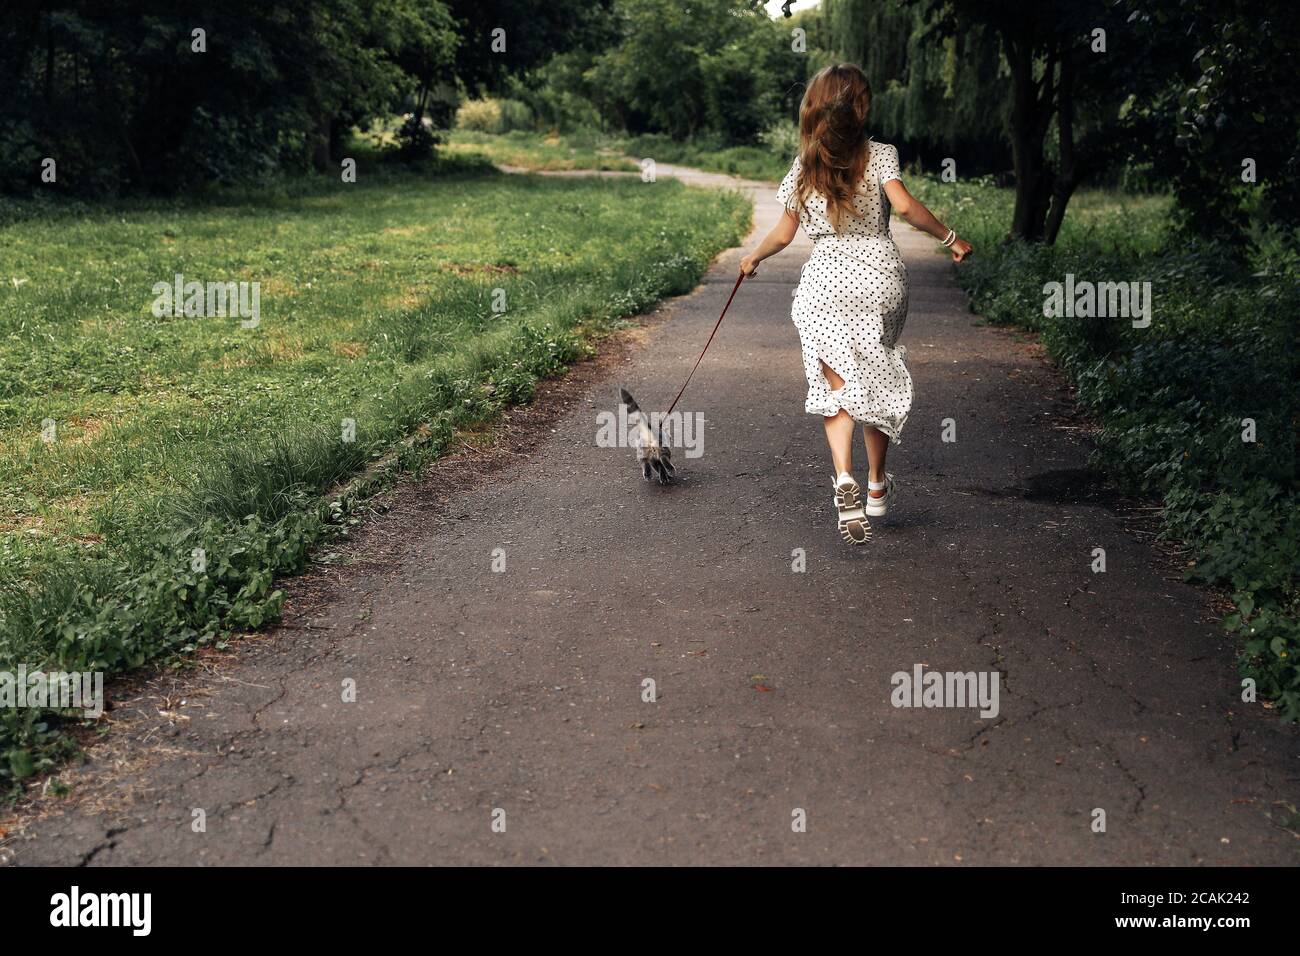 Junge blonde Frau läuft mit einer Katze an der Leine auf der Straße im Sommerpark. Foto von der Rückseite des allgemeinen Plans. Das Mädchen ist in einem weißen langen Polka Dot Kleid und weißen Schuhen gekleidet. Stockfoto